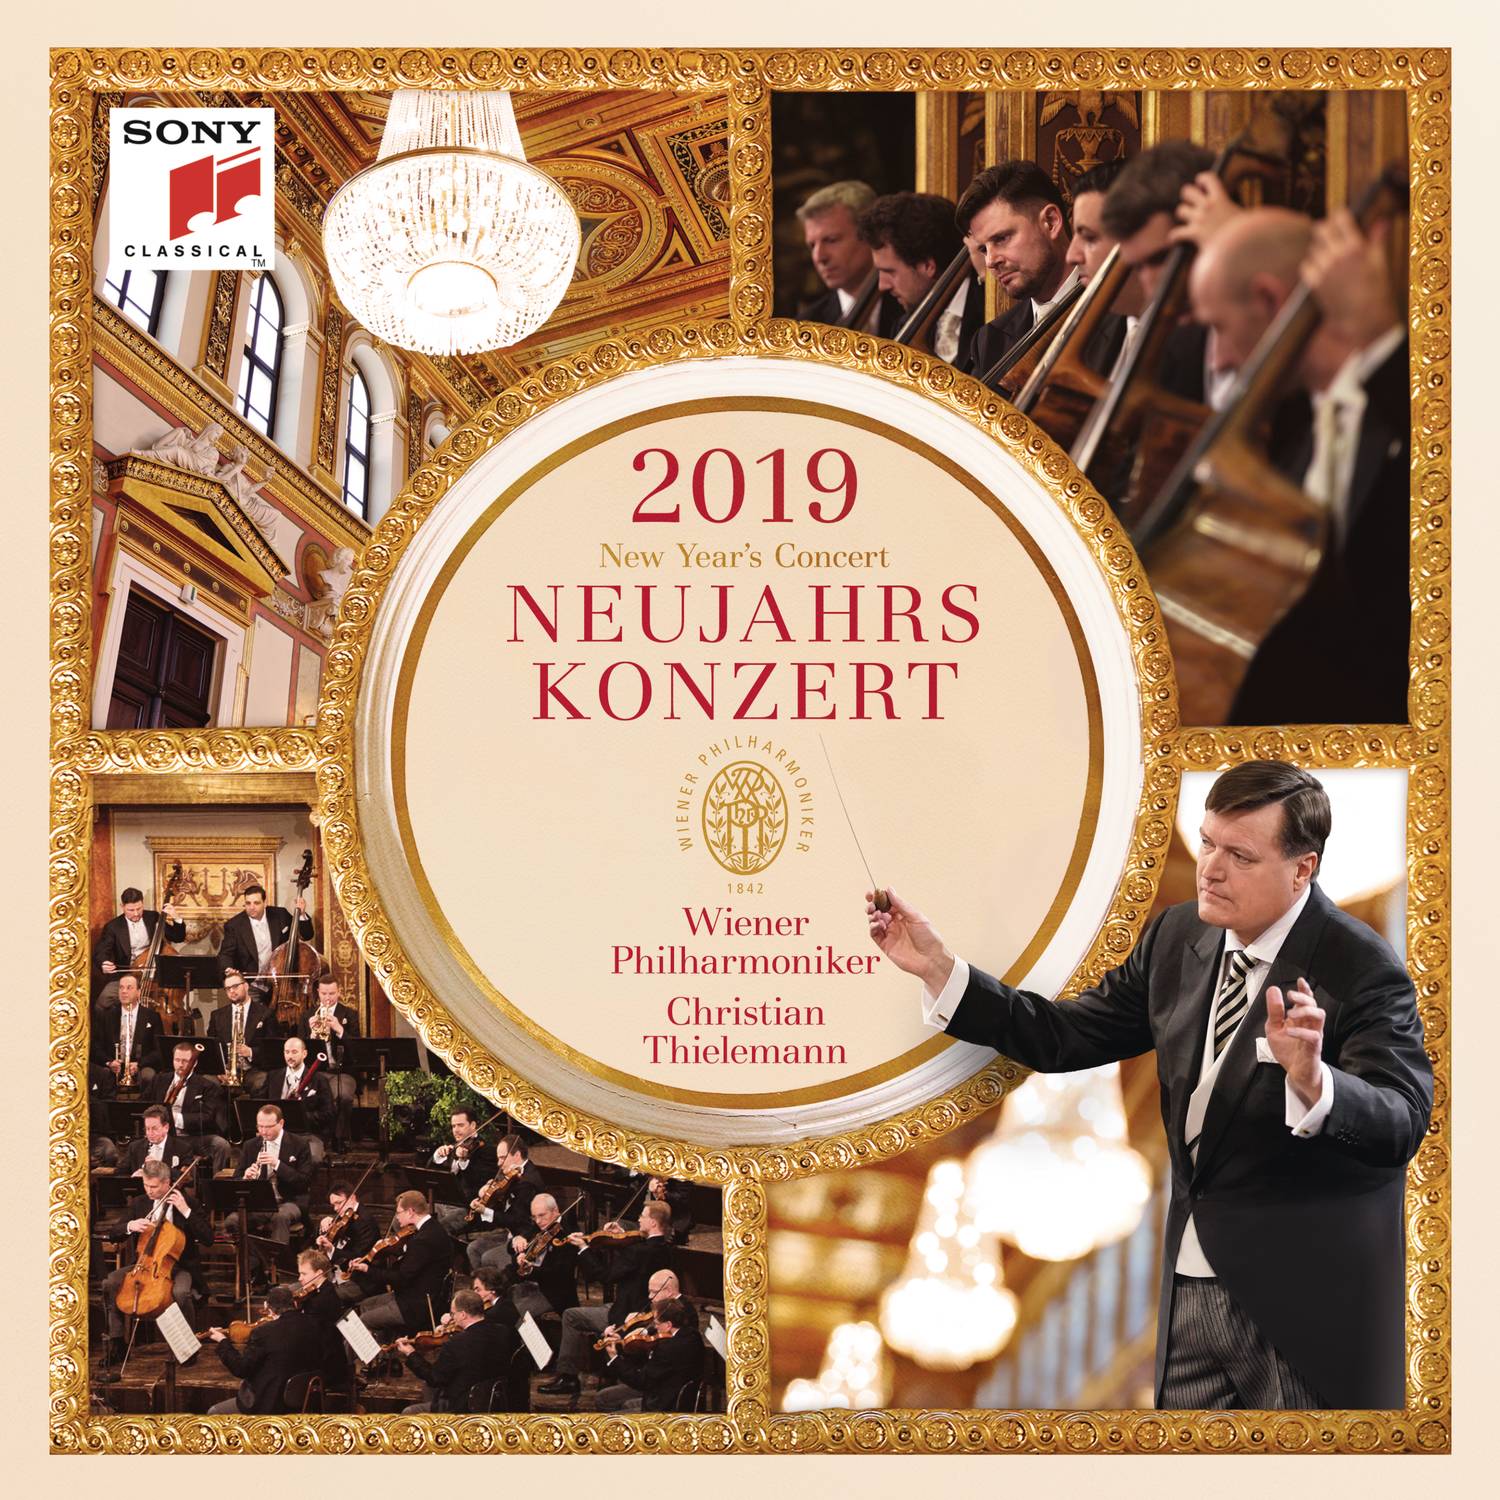 Neujahrskonzert 2019 / New Year's Concert 2019 / Concert du Nouvel An 2019